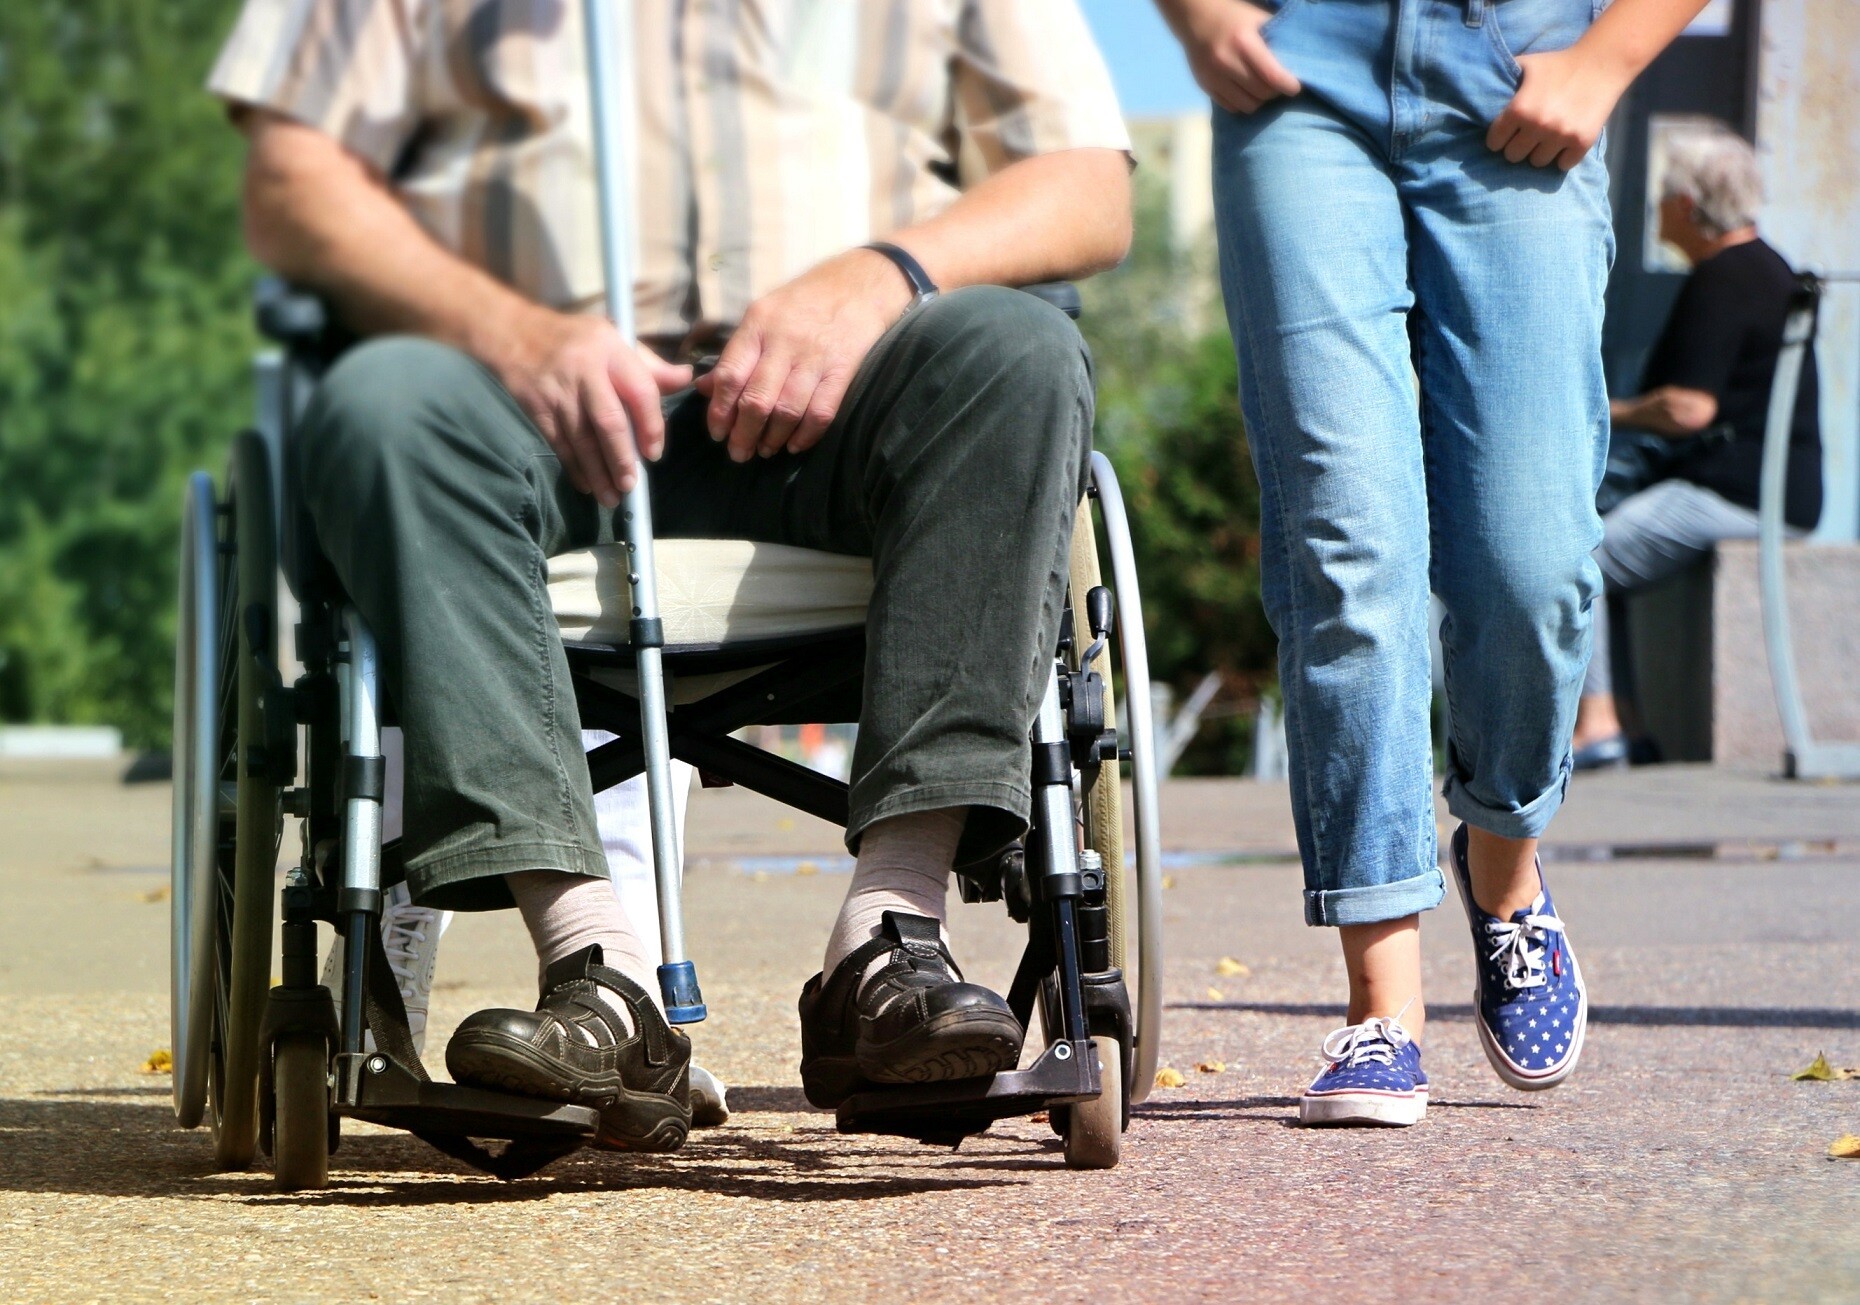 Un homme dépendant en chemise rayée est assis dans un fauteuil roulant, une accompagnatrice marche à sa droite, les mains dans les poches de son jean. Les têtes ne sont pas visibles.